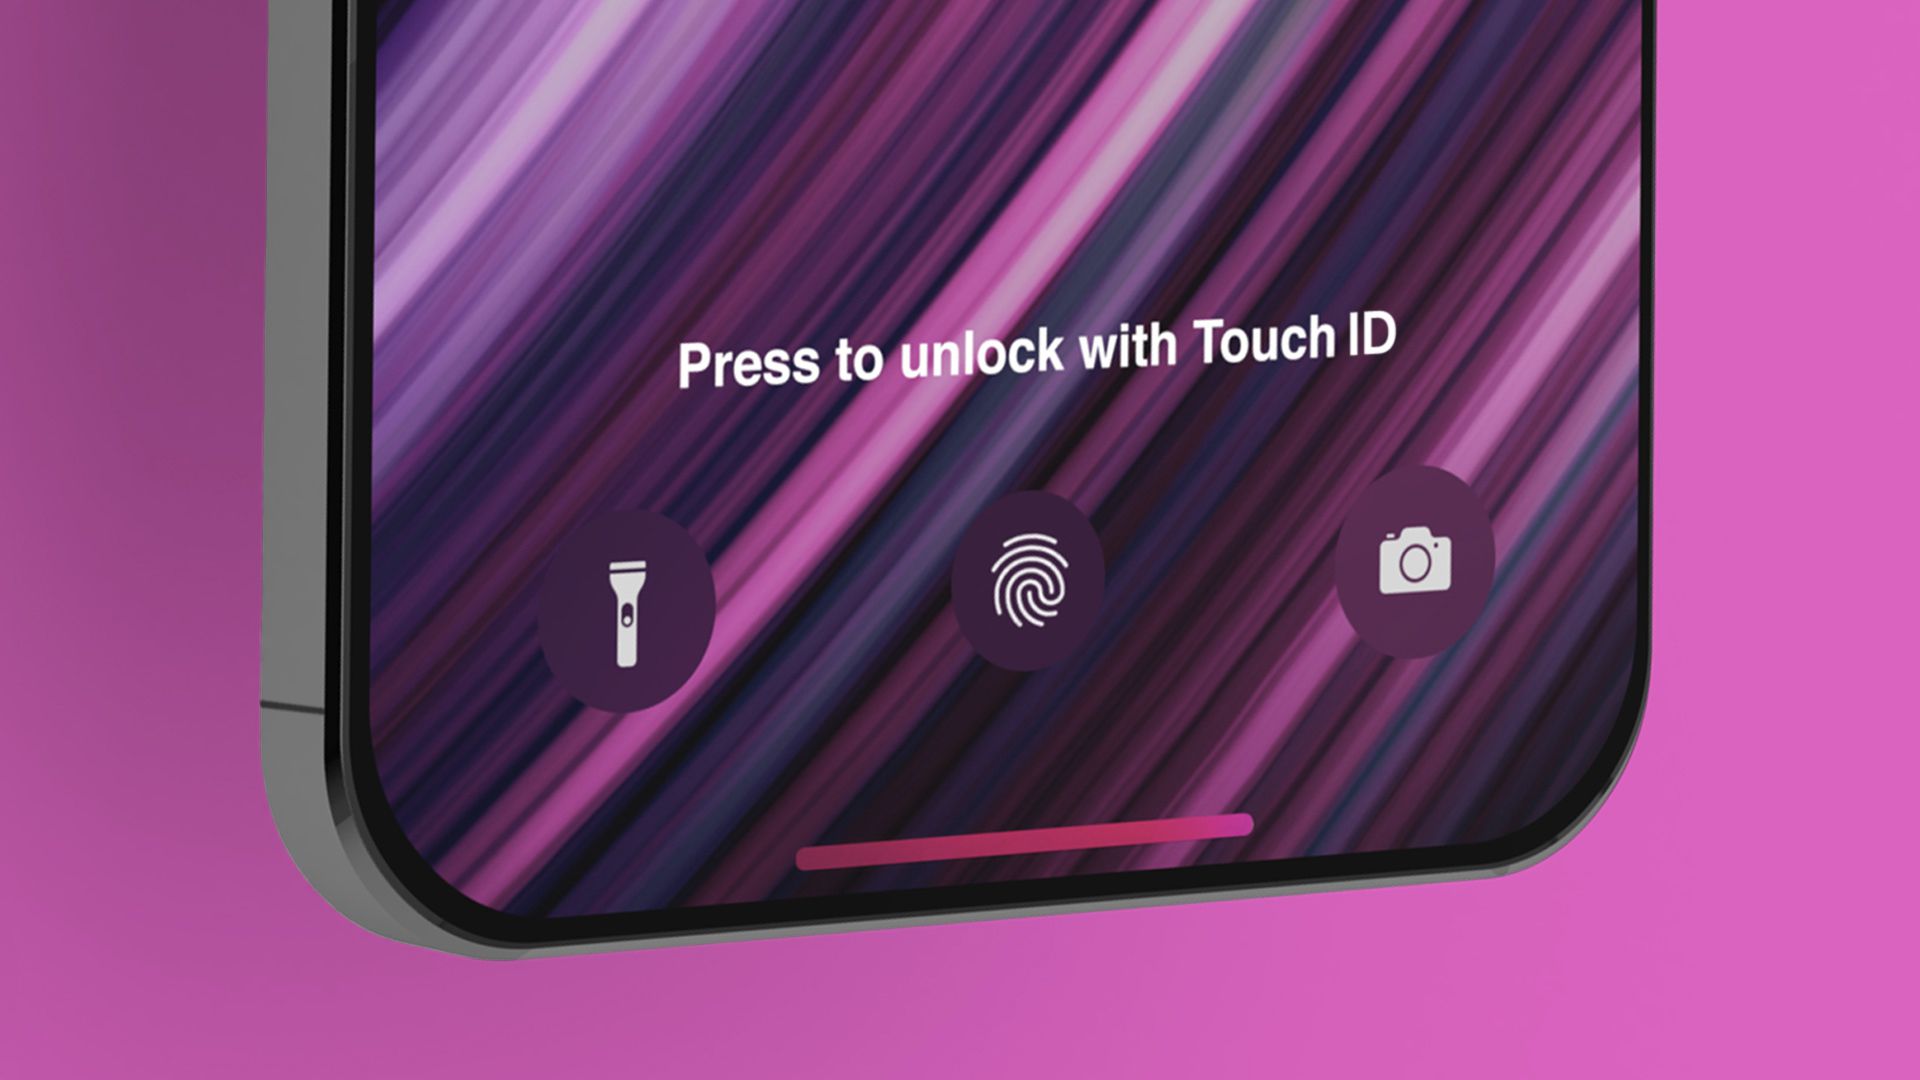 Τα iPhone 13 πιθανότατα θα έχουν Touch ID αισθητήρα κάτω από την οθόνη